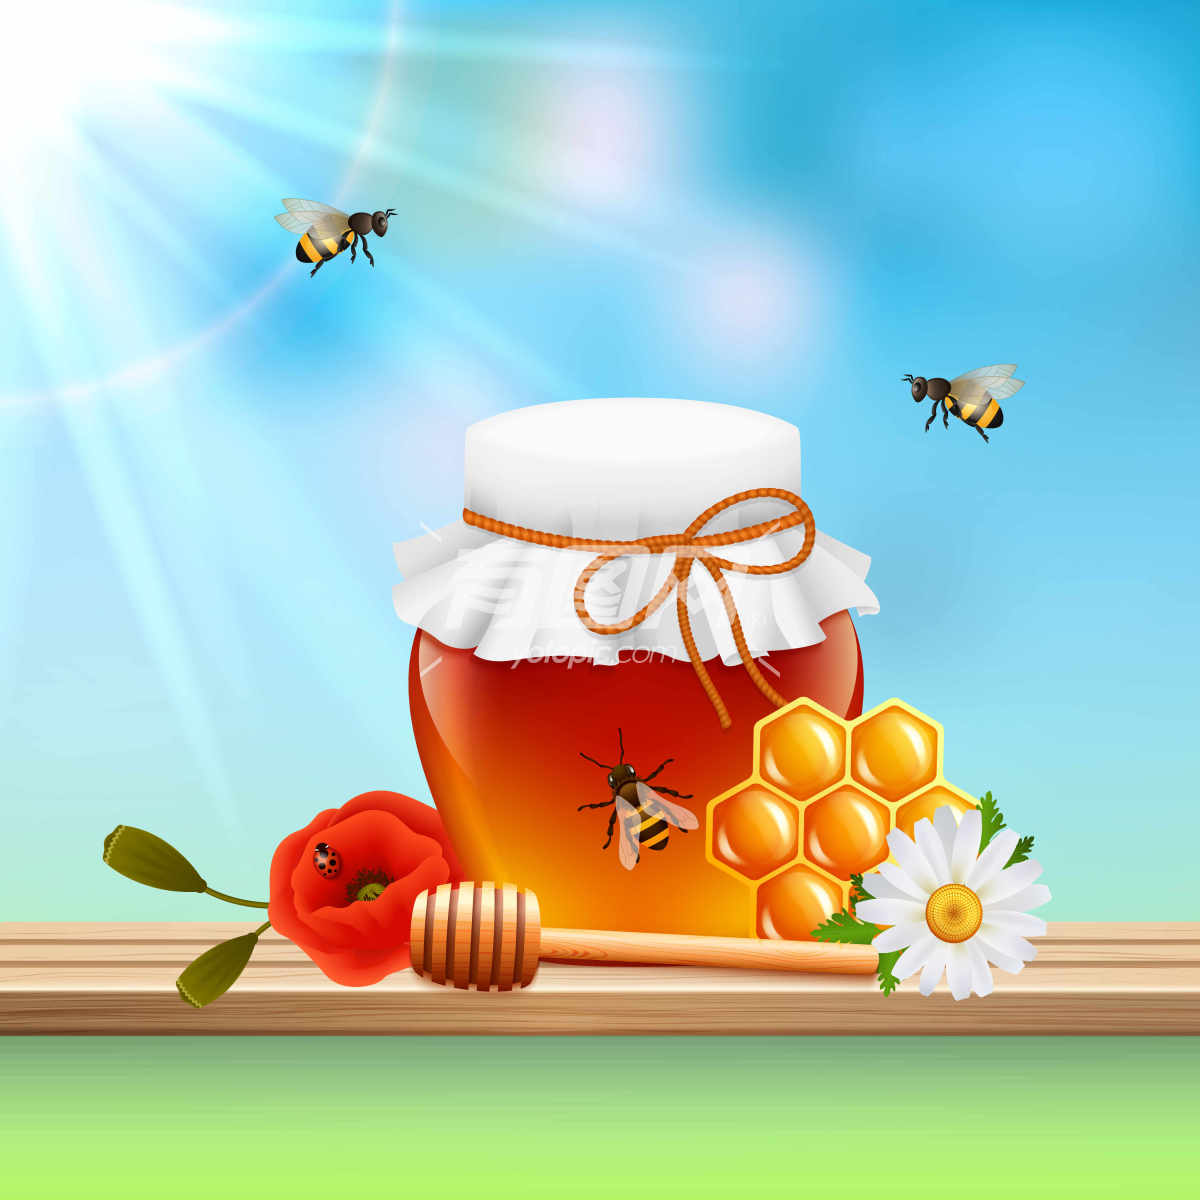 蜂蜜与蜜蜂